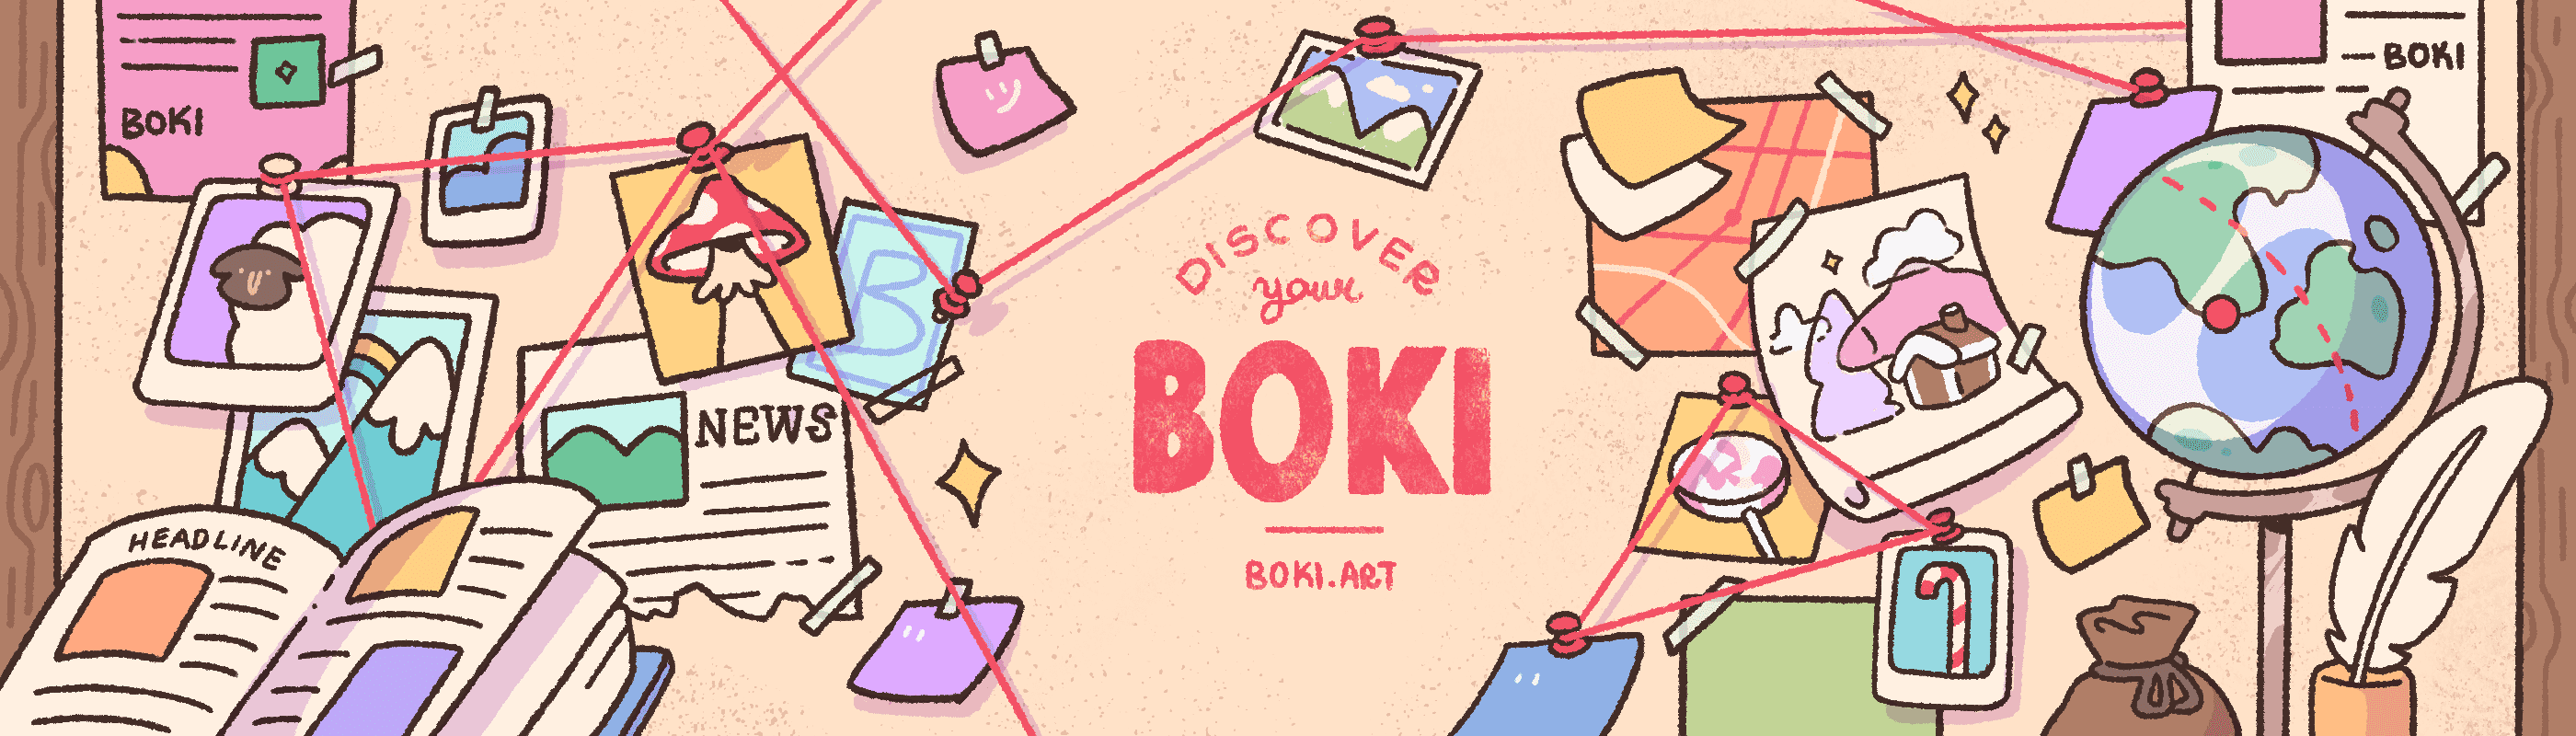 boki_team banner